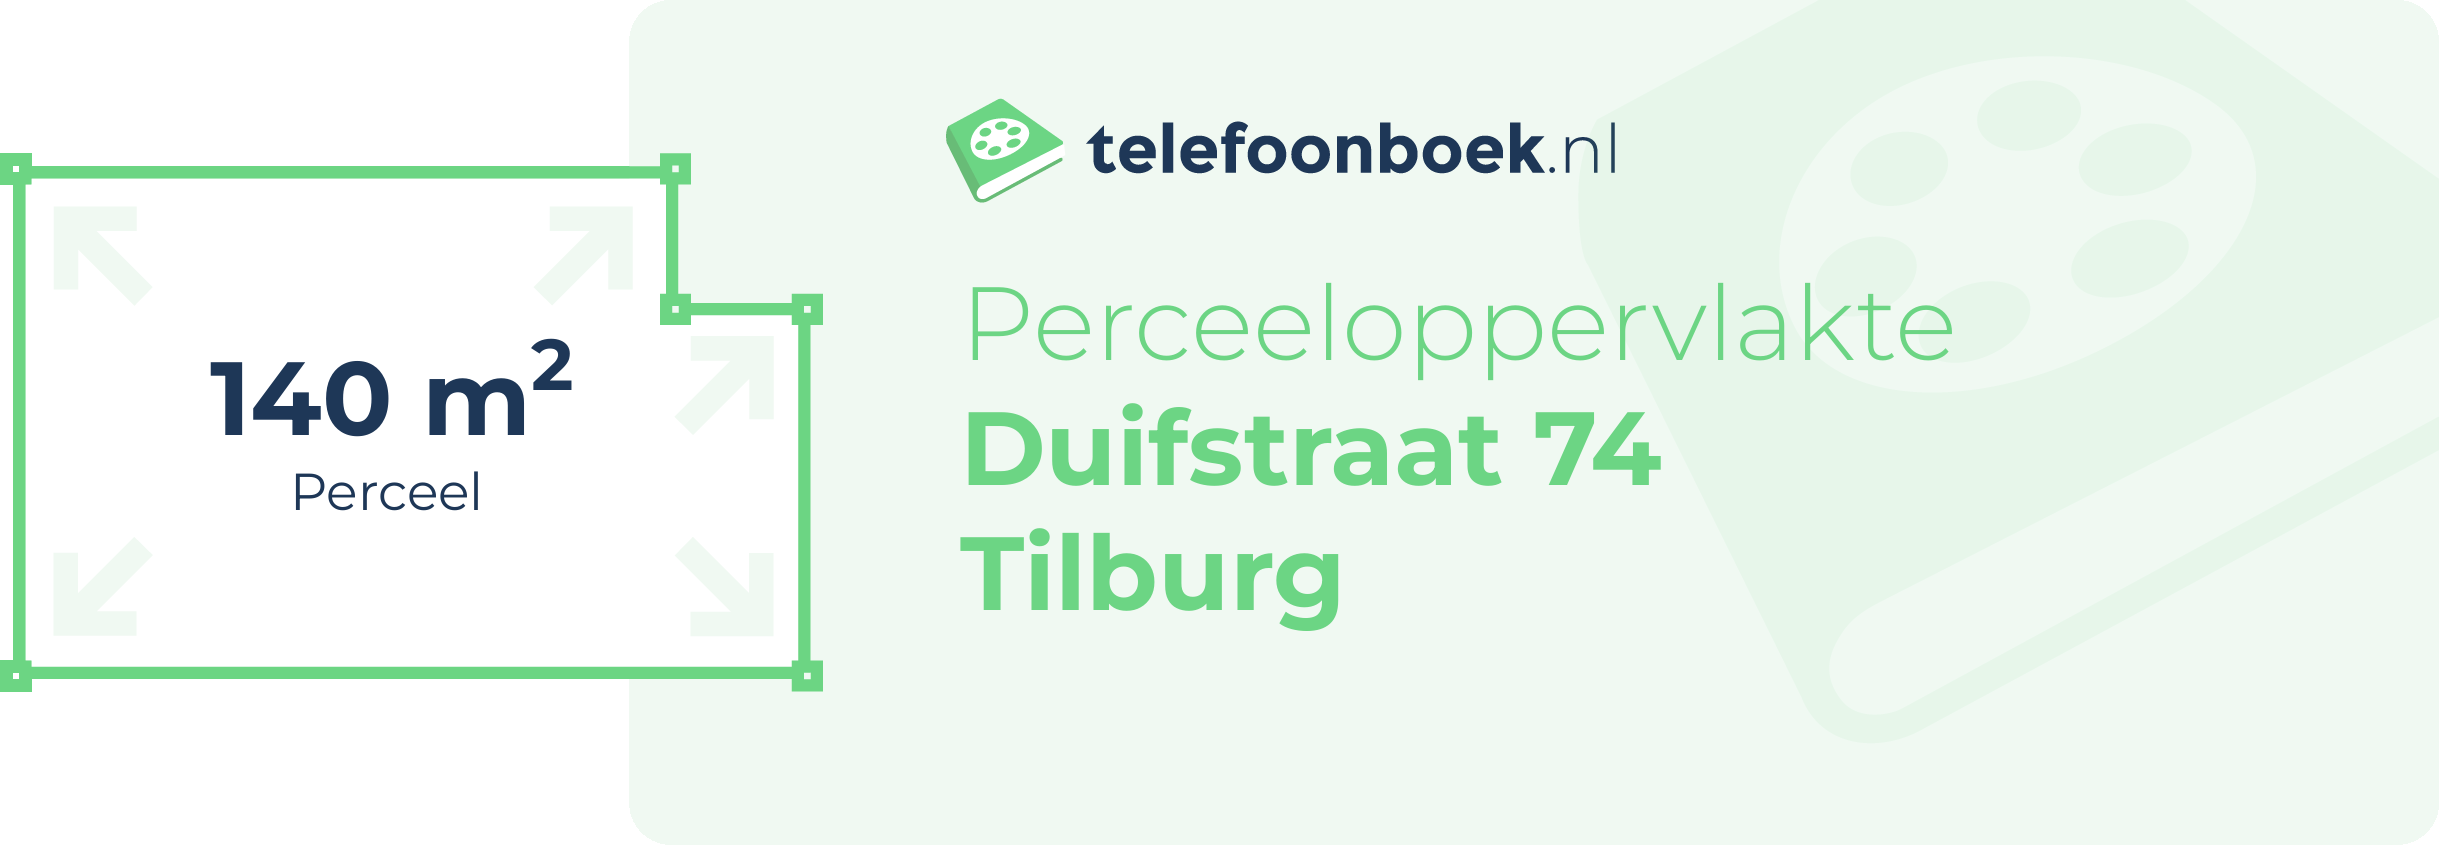 Perceeloppervlakte Duifstraat 74 Tilburg